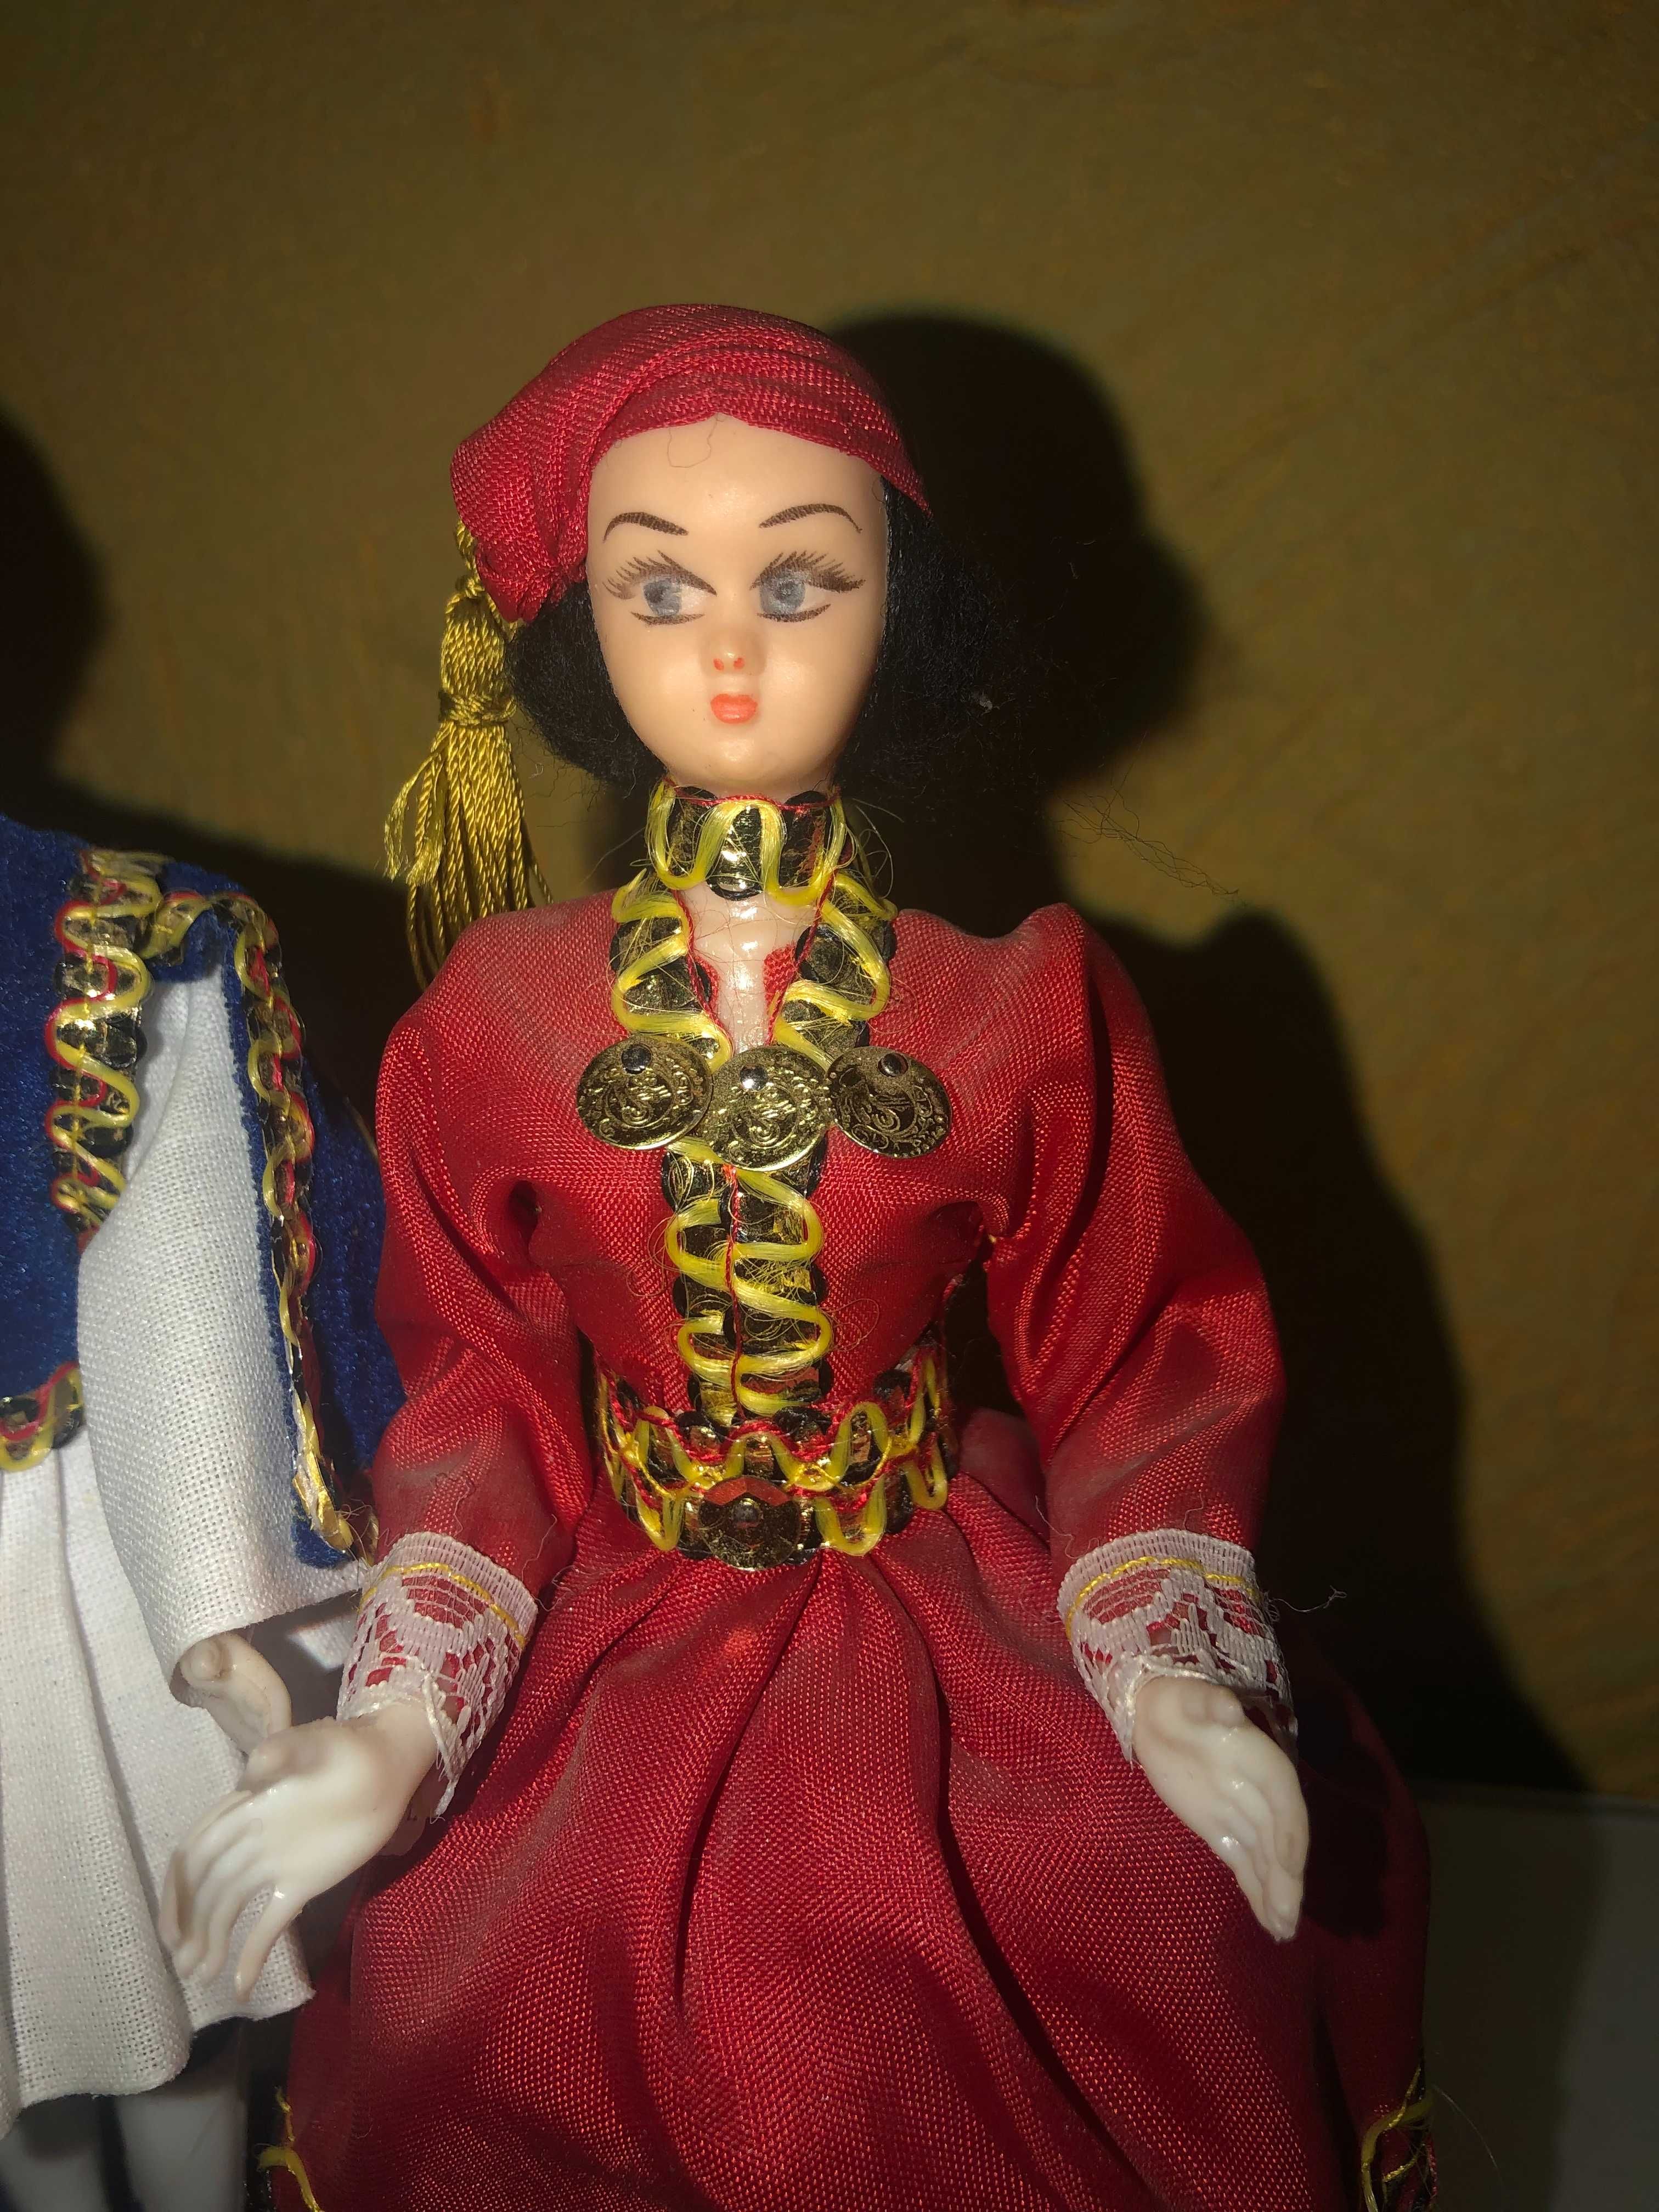 Куклы в национальной одежде